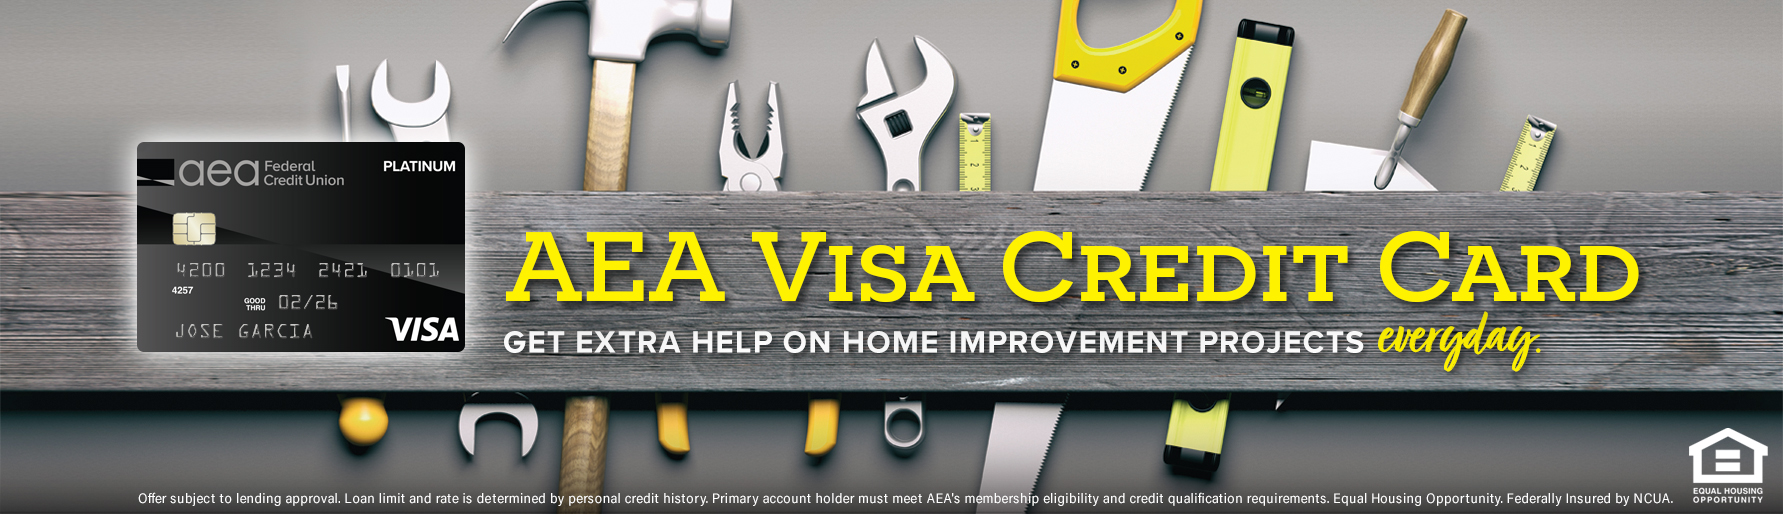 AEA VISA Credit Card